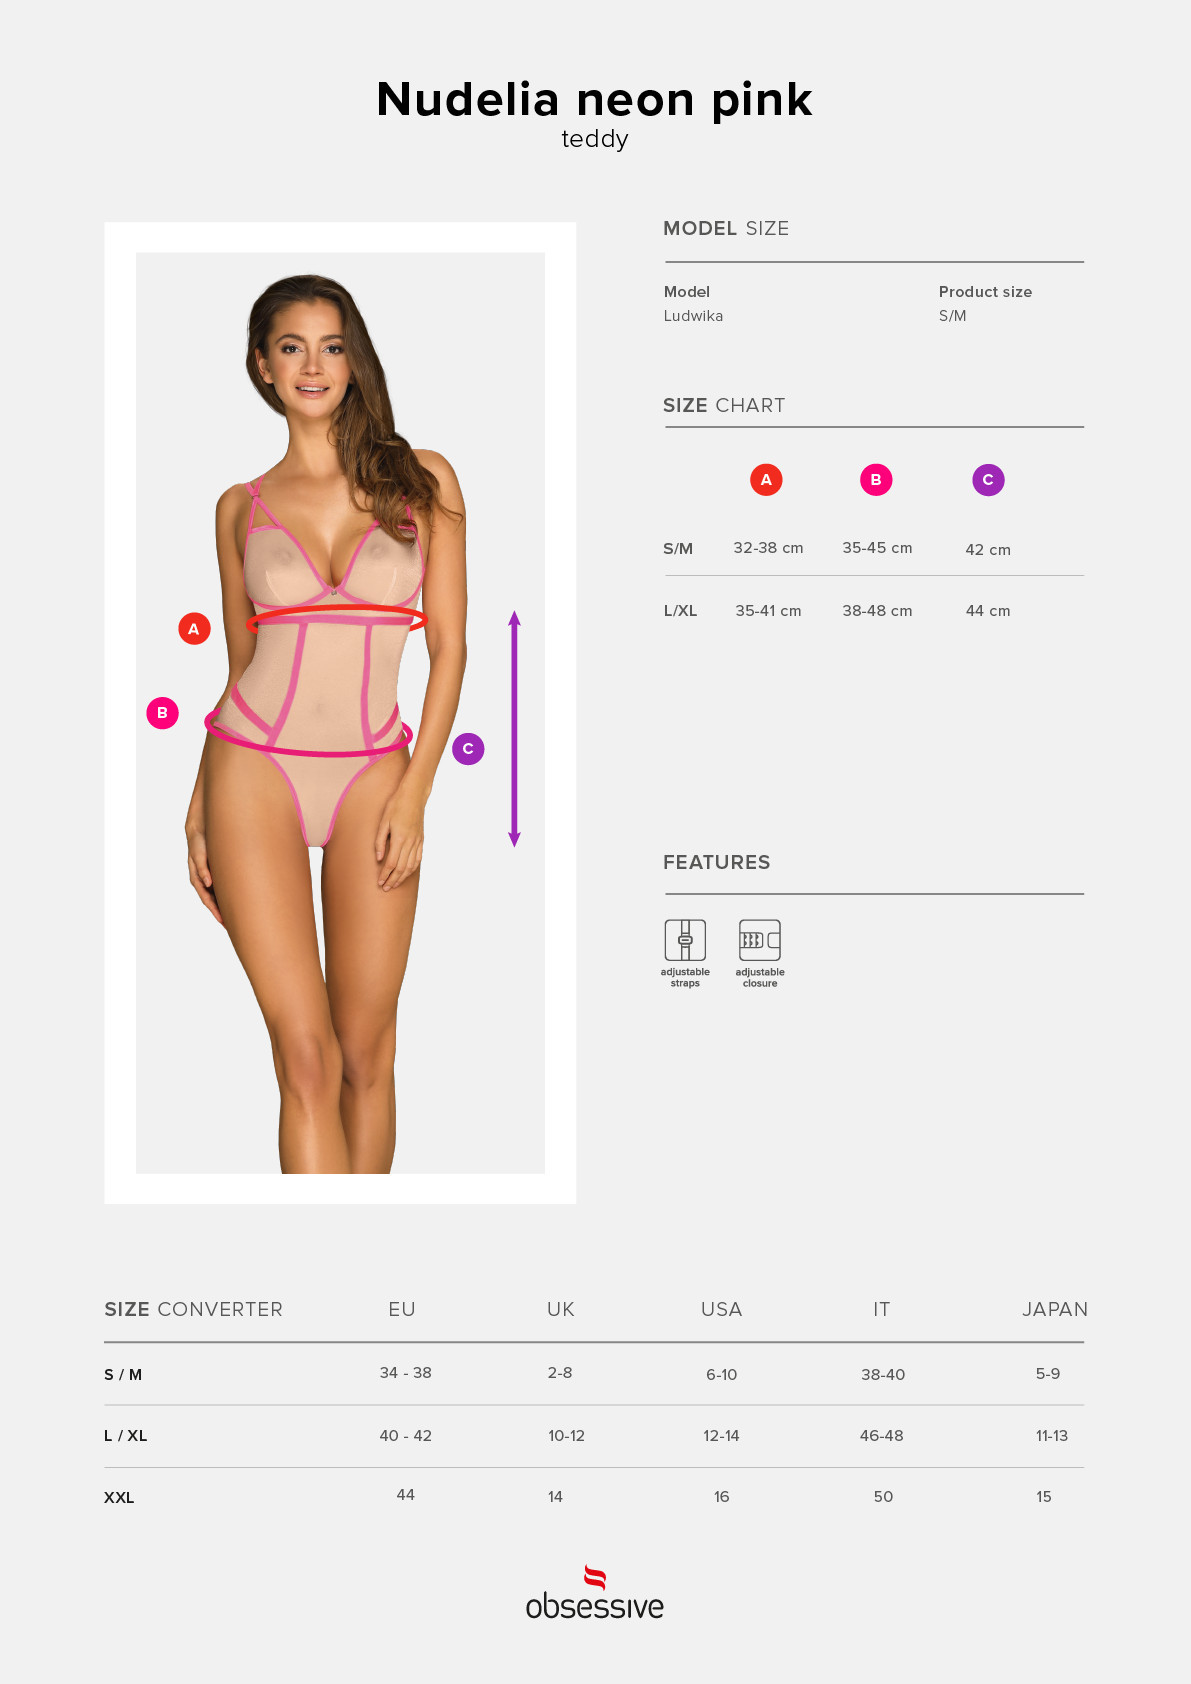 Elegantní body model 15537101 teddy neon pink růžová S / M - Obsessive